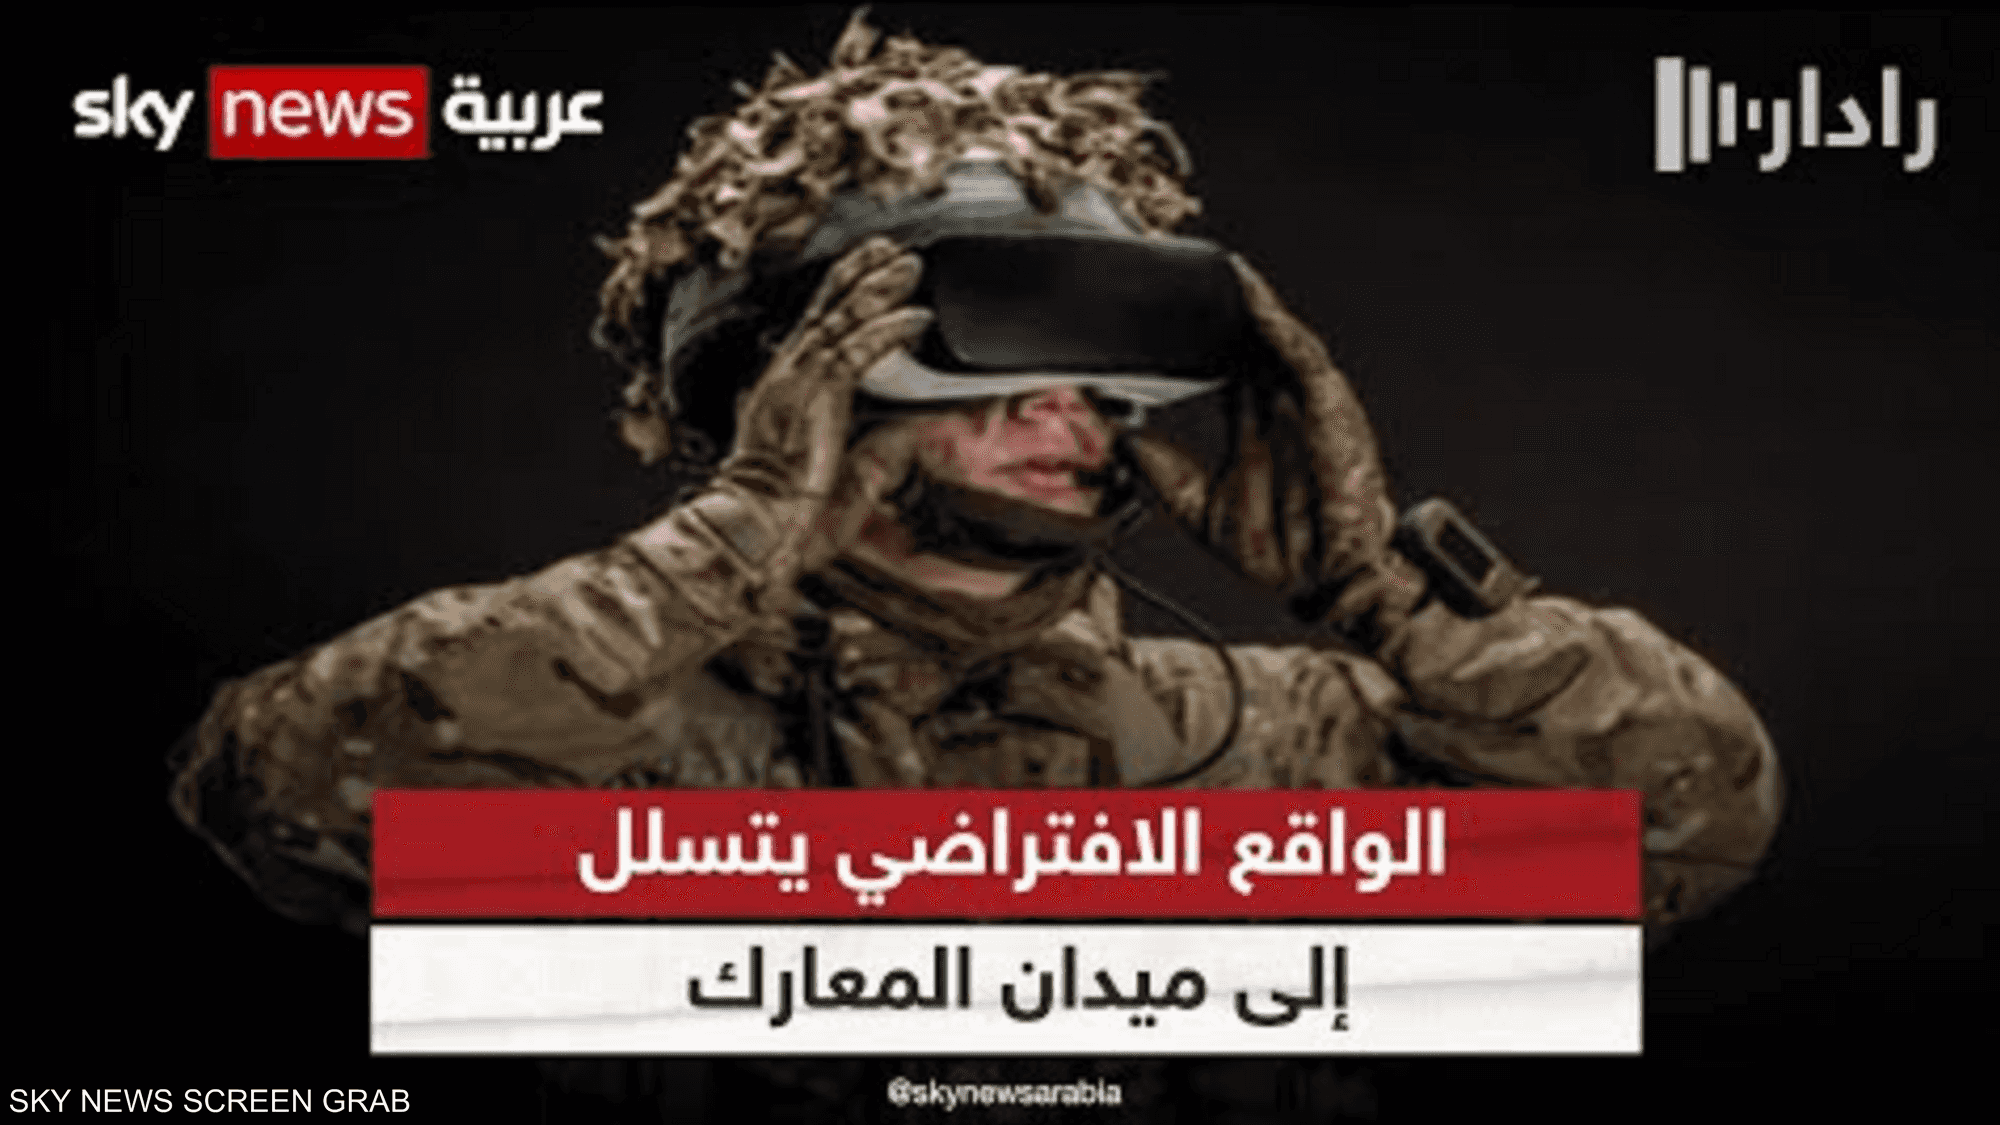 الواقع الافتراضي يتسلل إلى ميدان المعارك